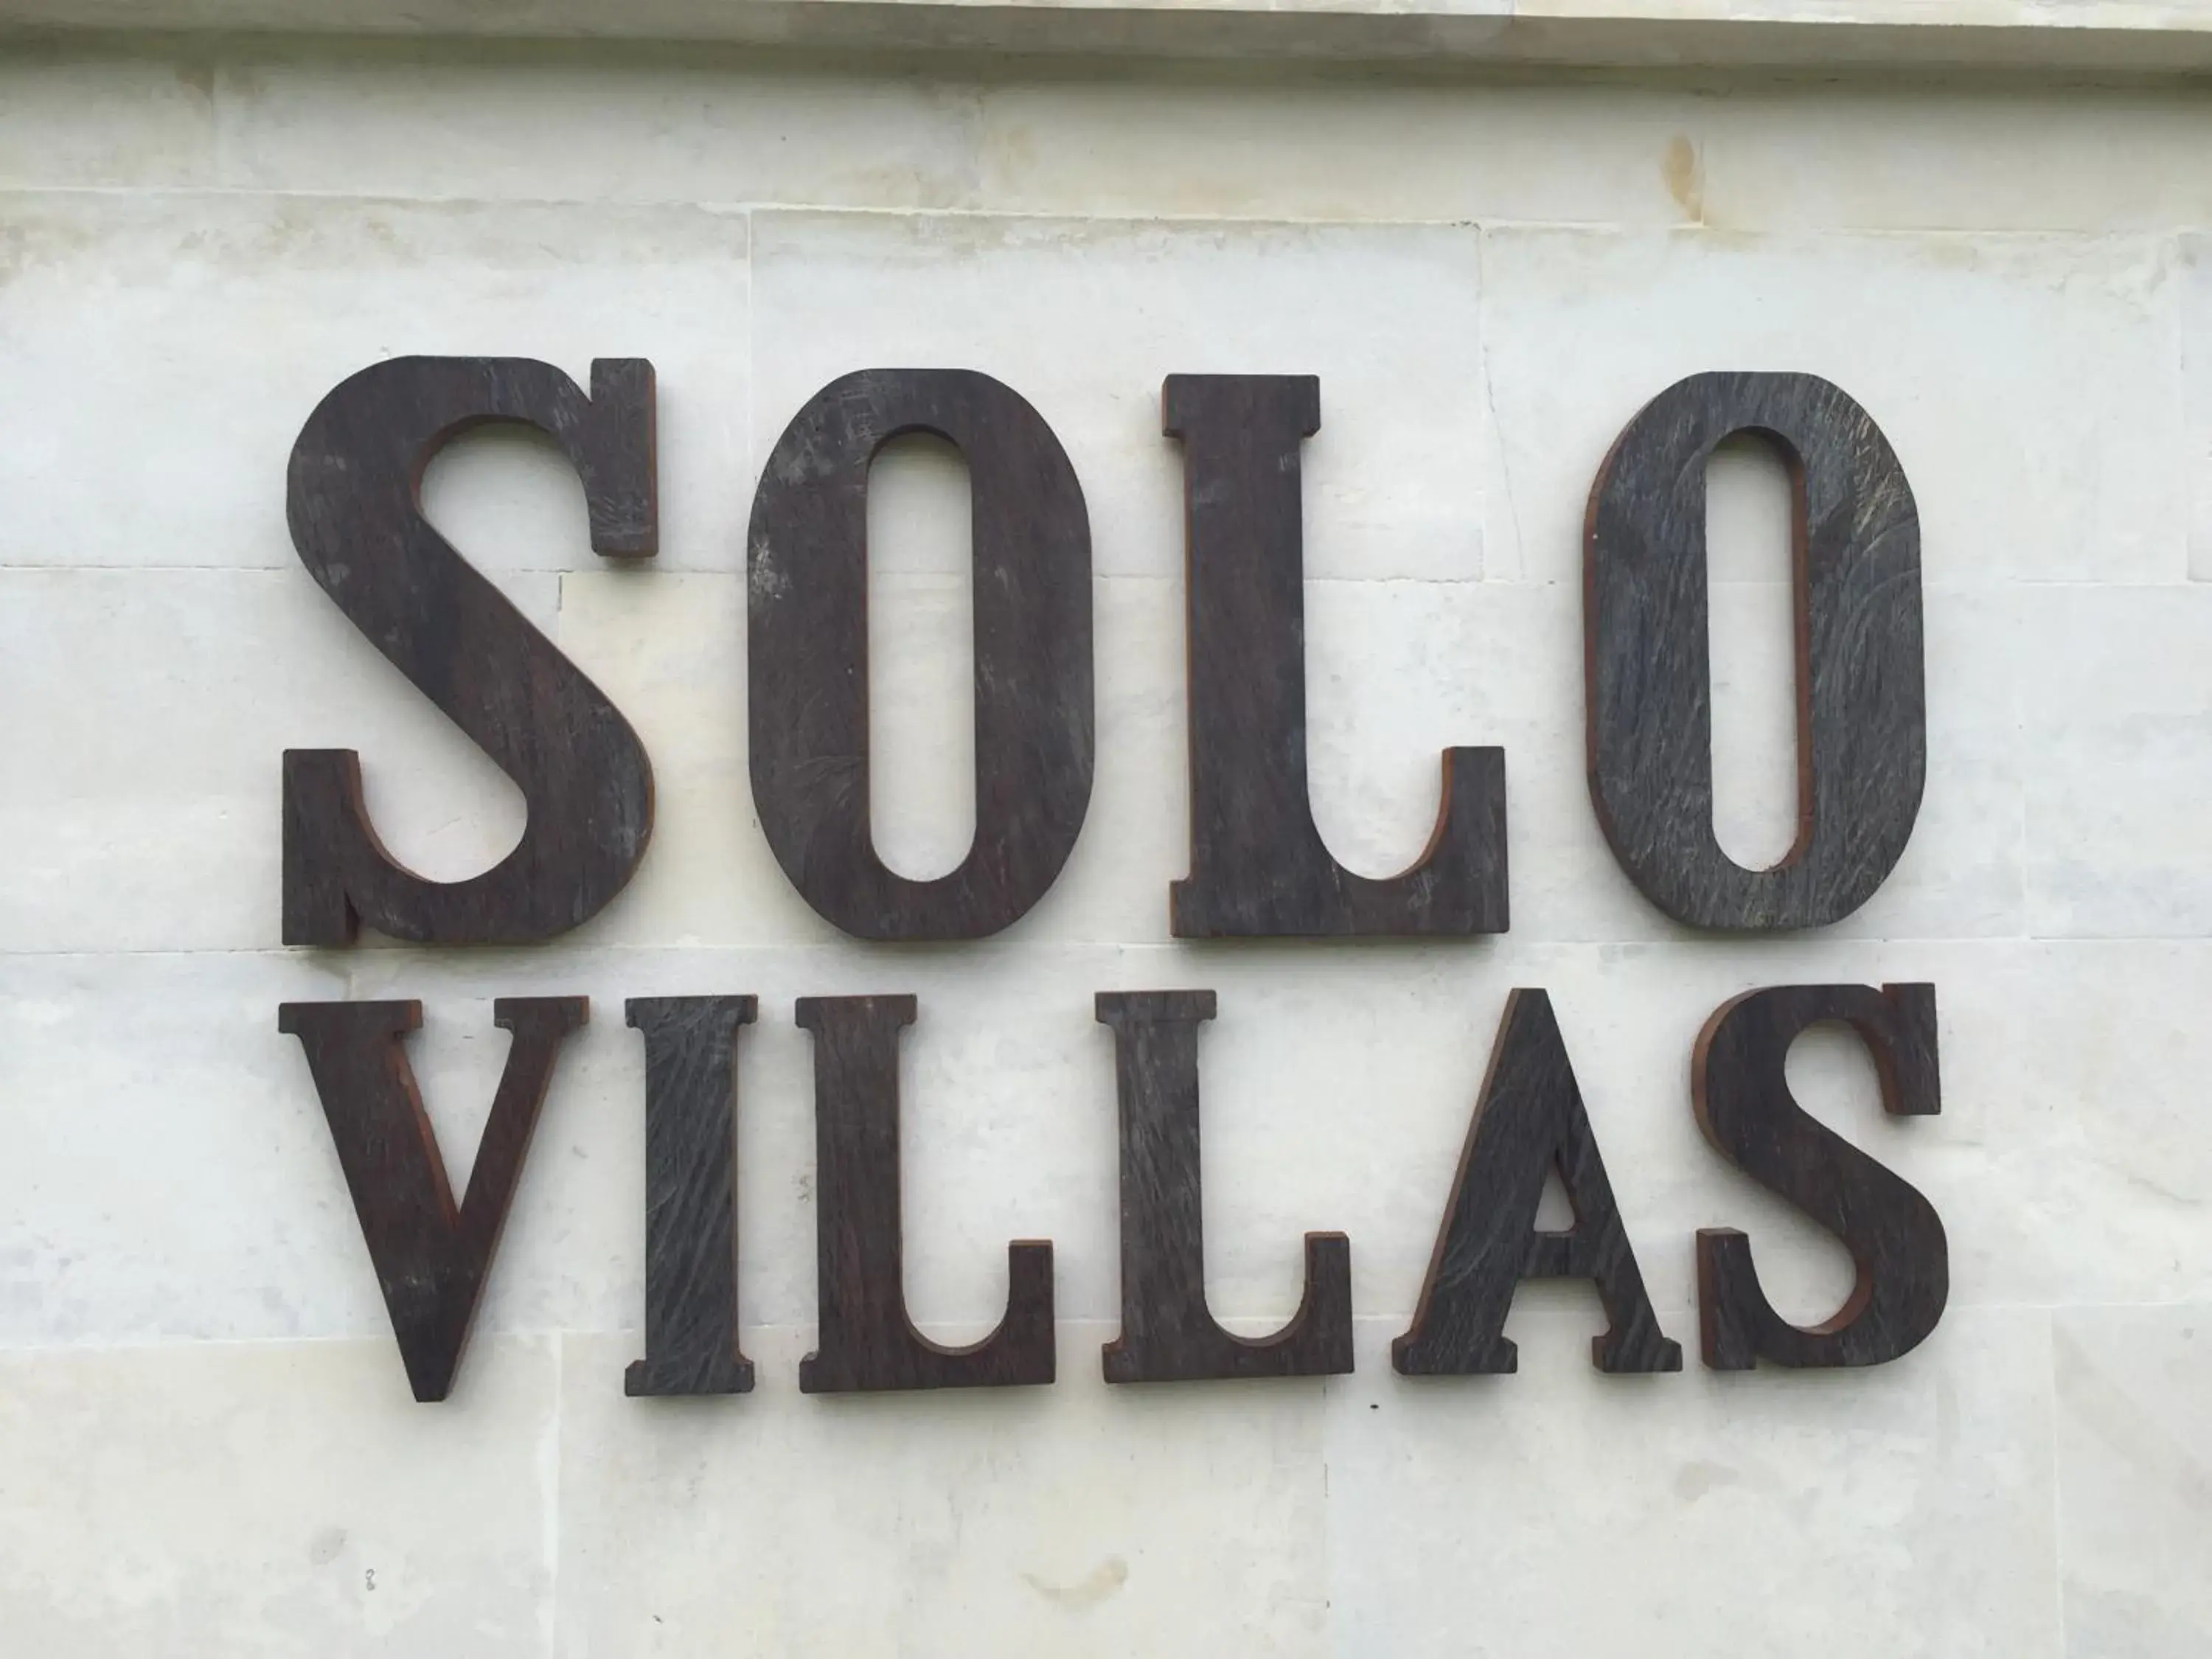 Property building in Solo Villas & Retreat